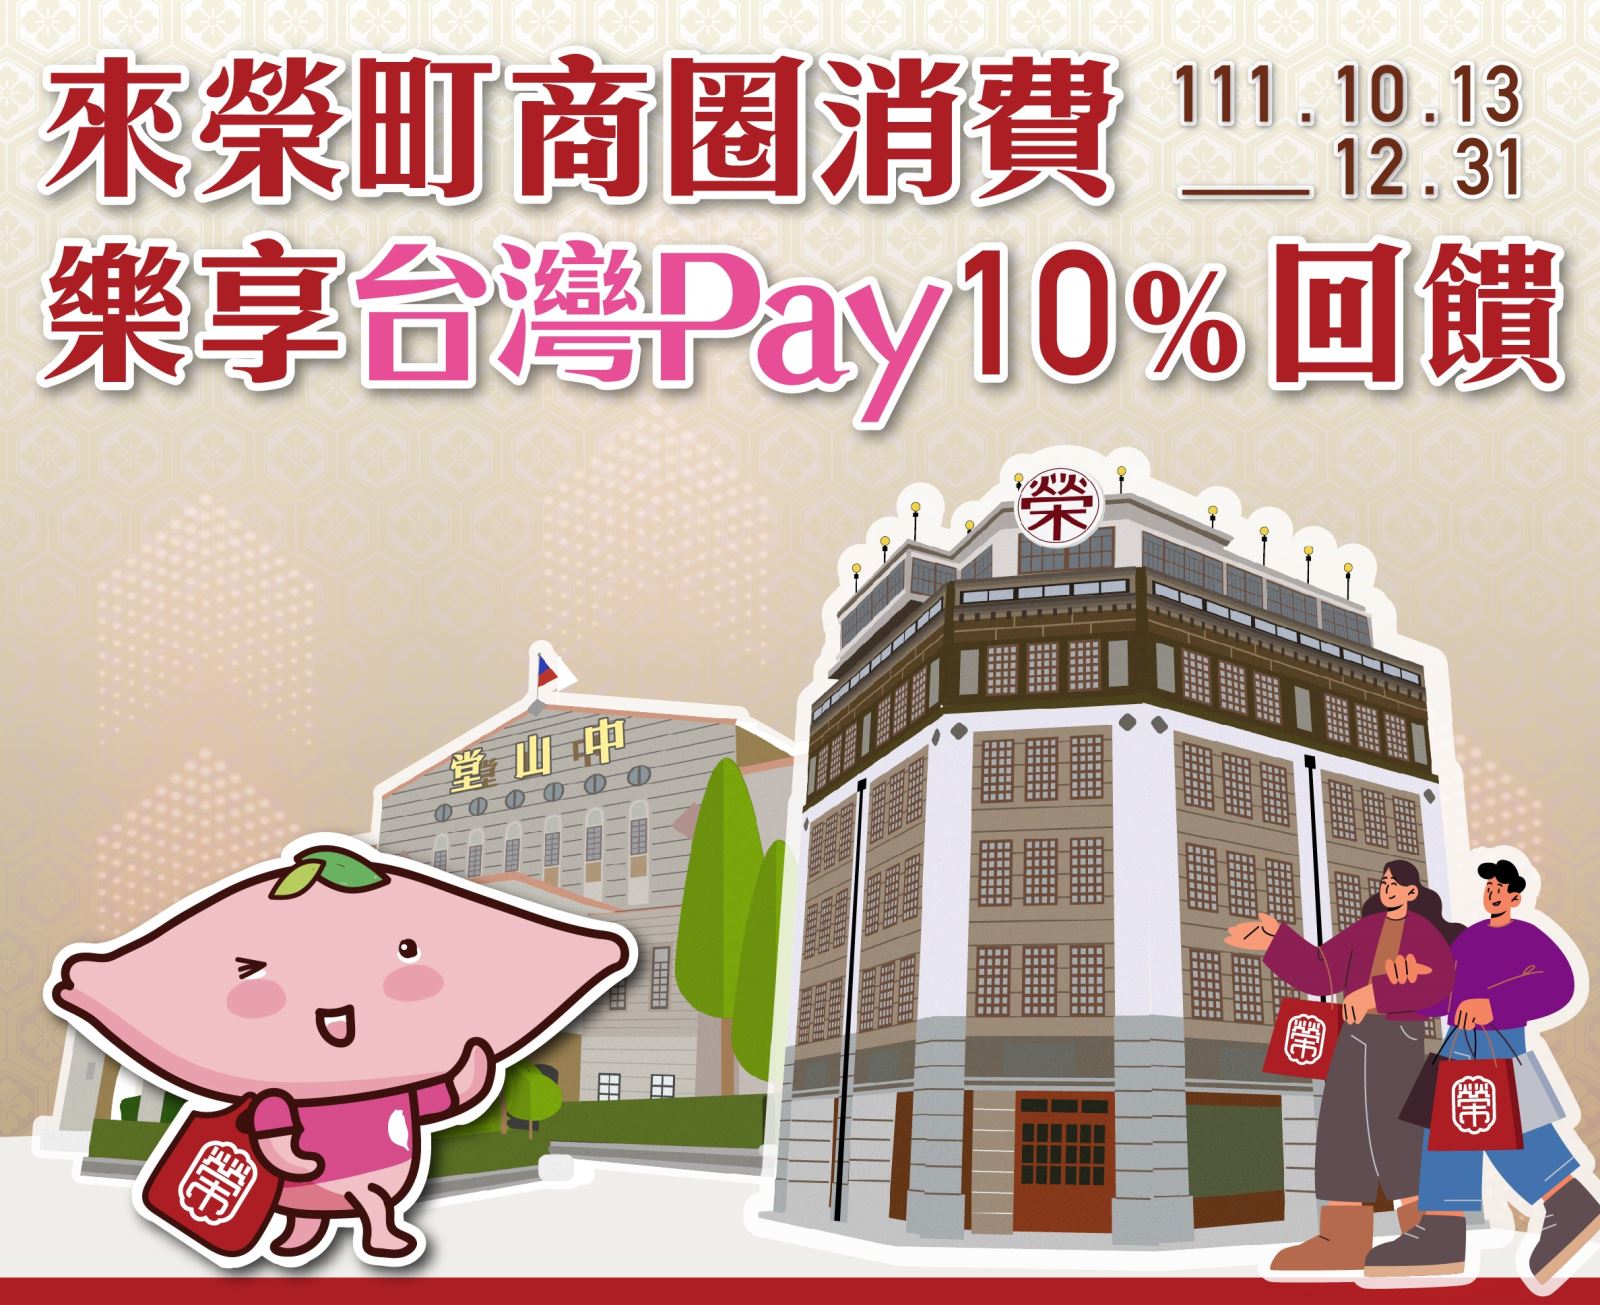 來榮町商圈消費樂享台灣 Pay10%回饋。單筆交易不限金額享 10%現金回饋(此圖片為本優惠活動主要視覺，活動內容請參考活動辦法說明文字)